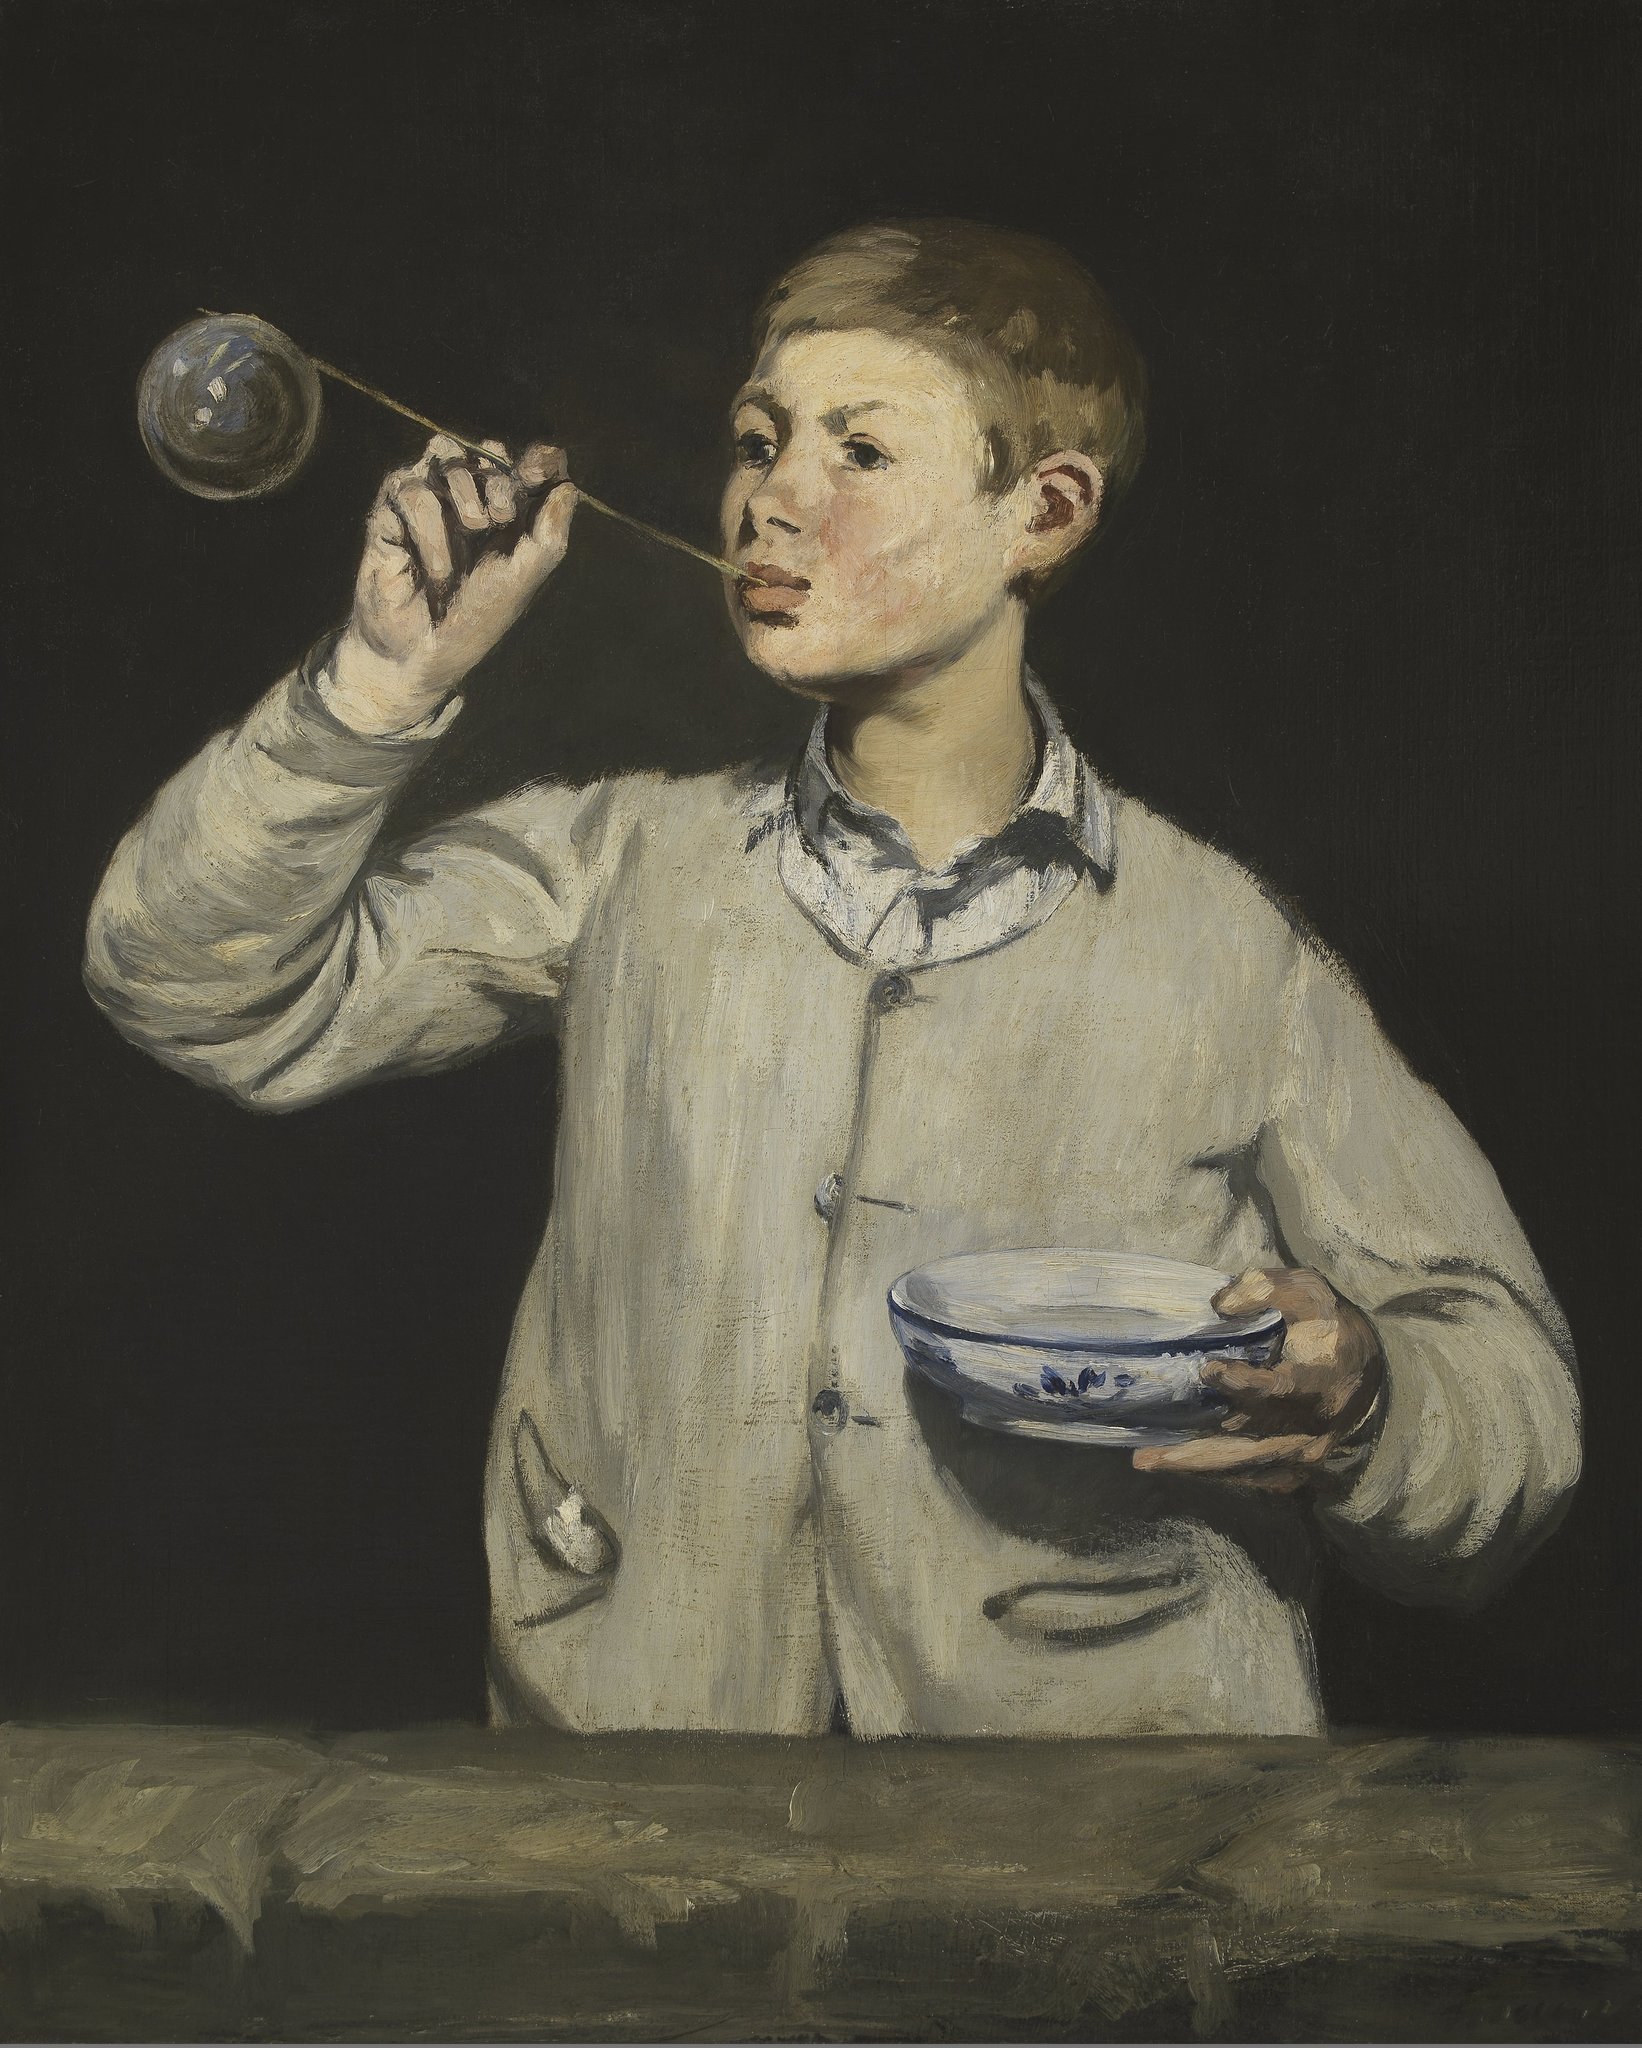 吹泡泡的男孩 by Édouard Manet - 1867年 - 100.5 x 81.4 cm 